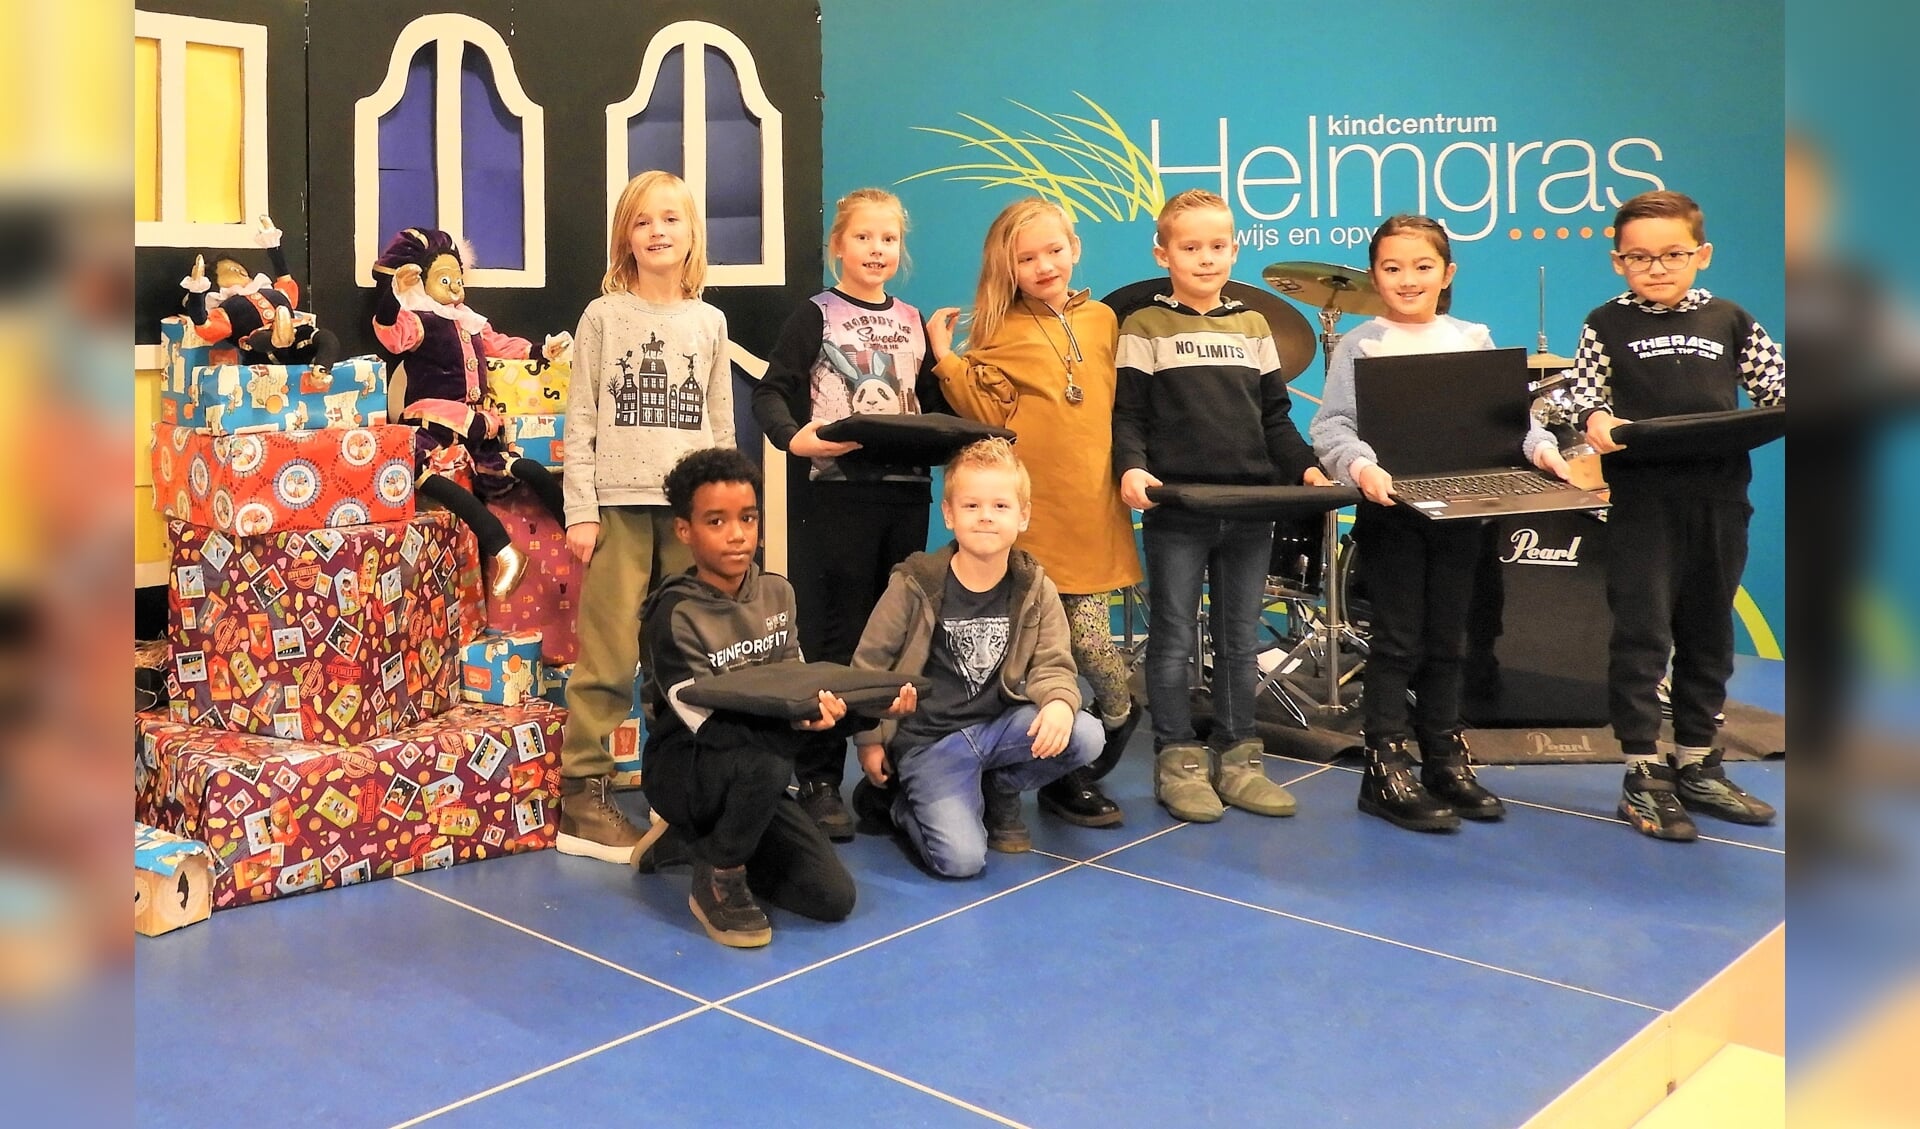 Leerlingen van kindcentrum Helmgras namen de eerste 5 laptops in ontvangst die
gedoneerd worden aan kinderen die ze goed kunnen gebruiken